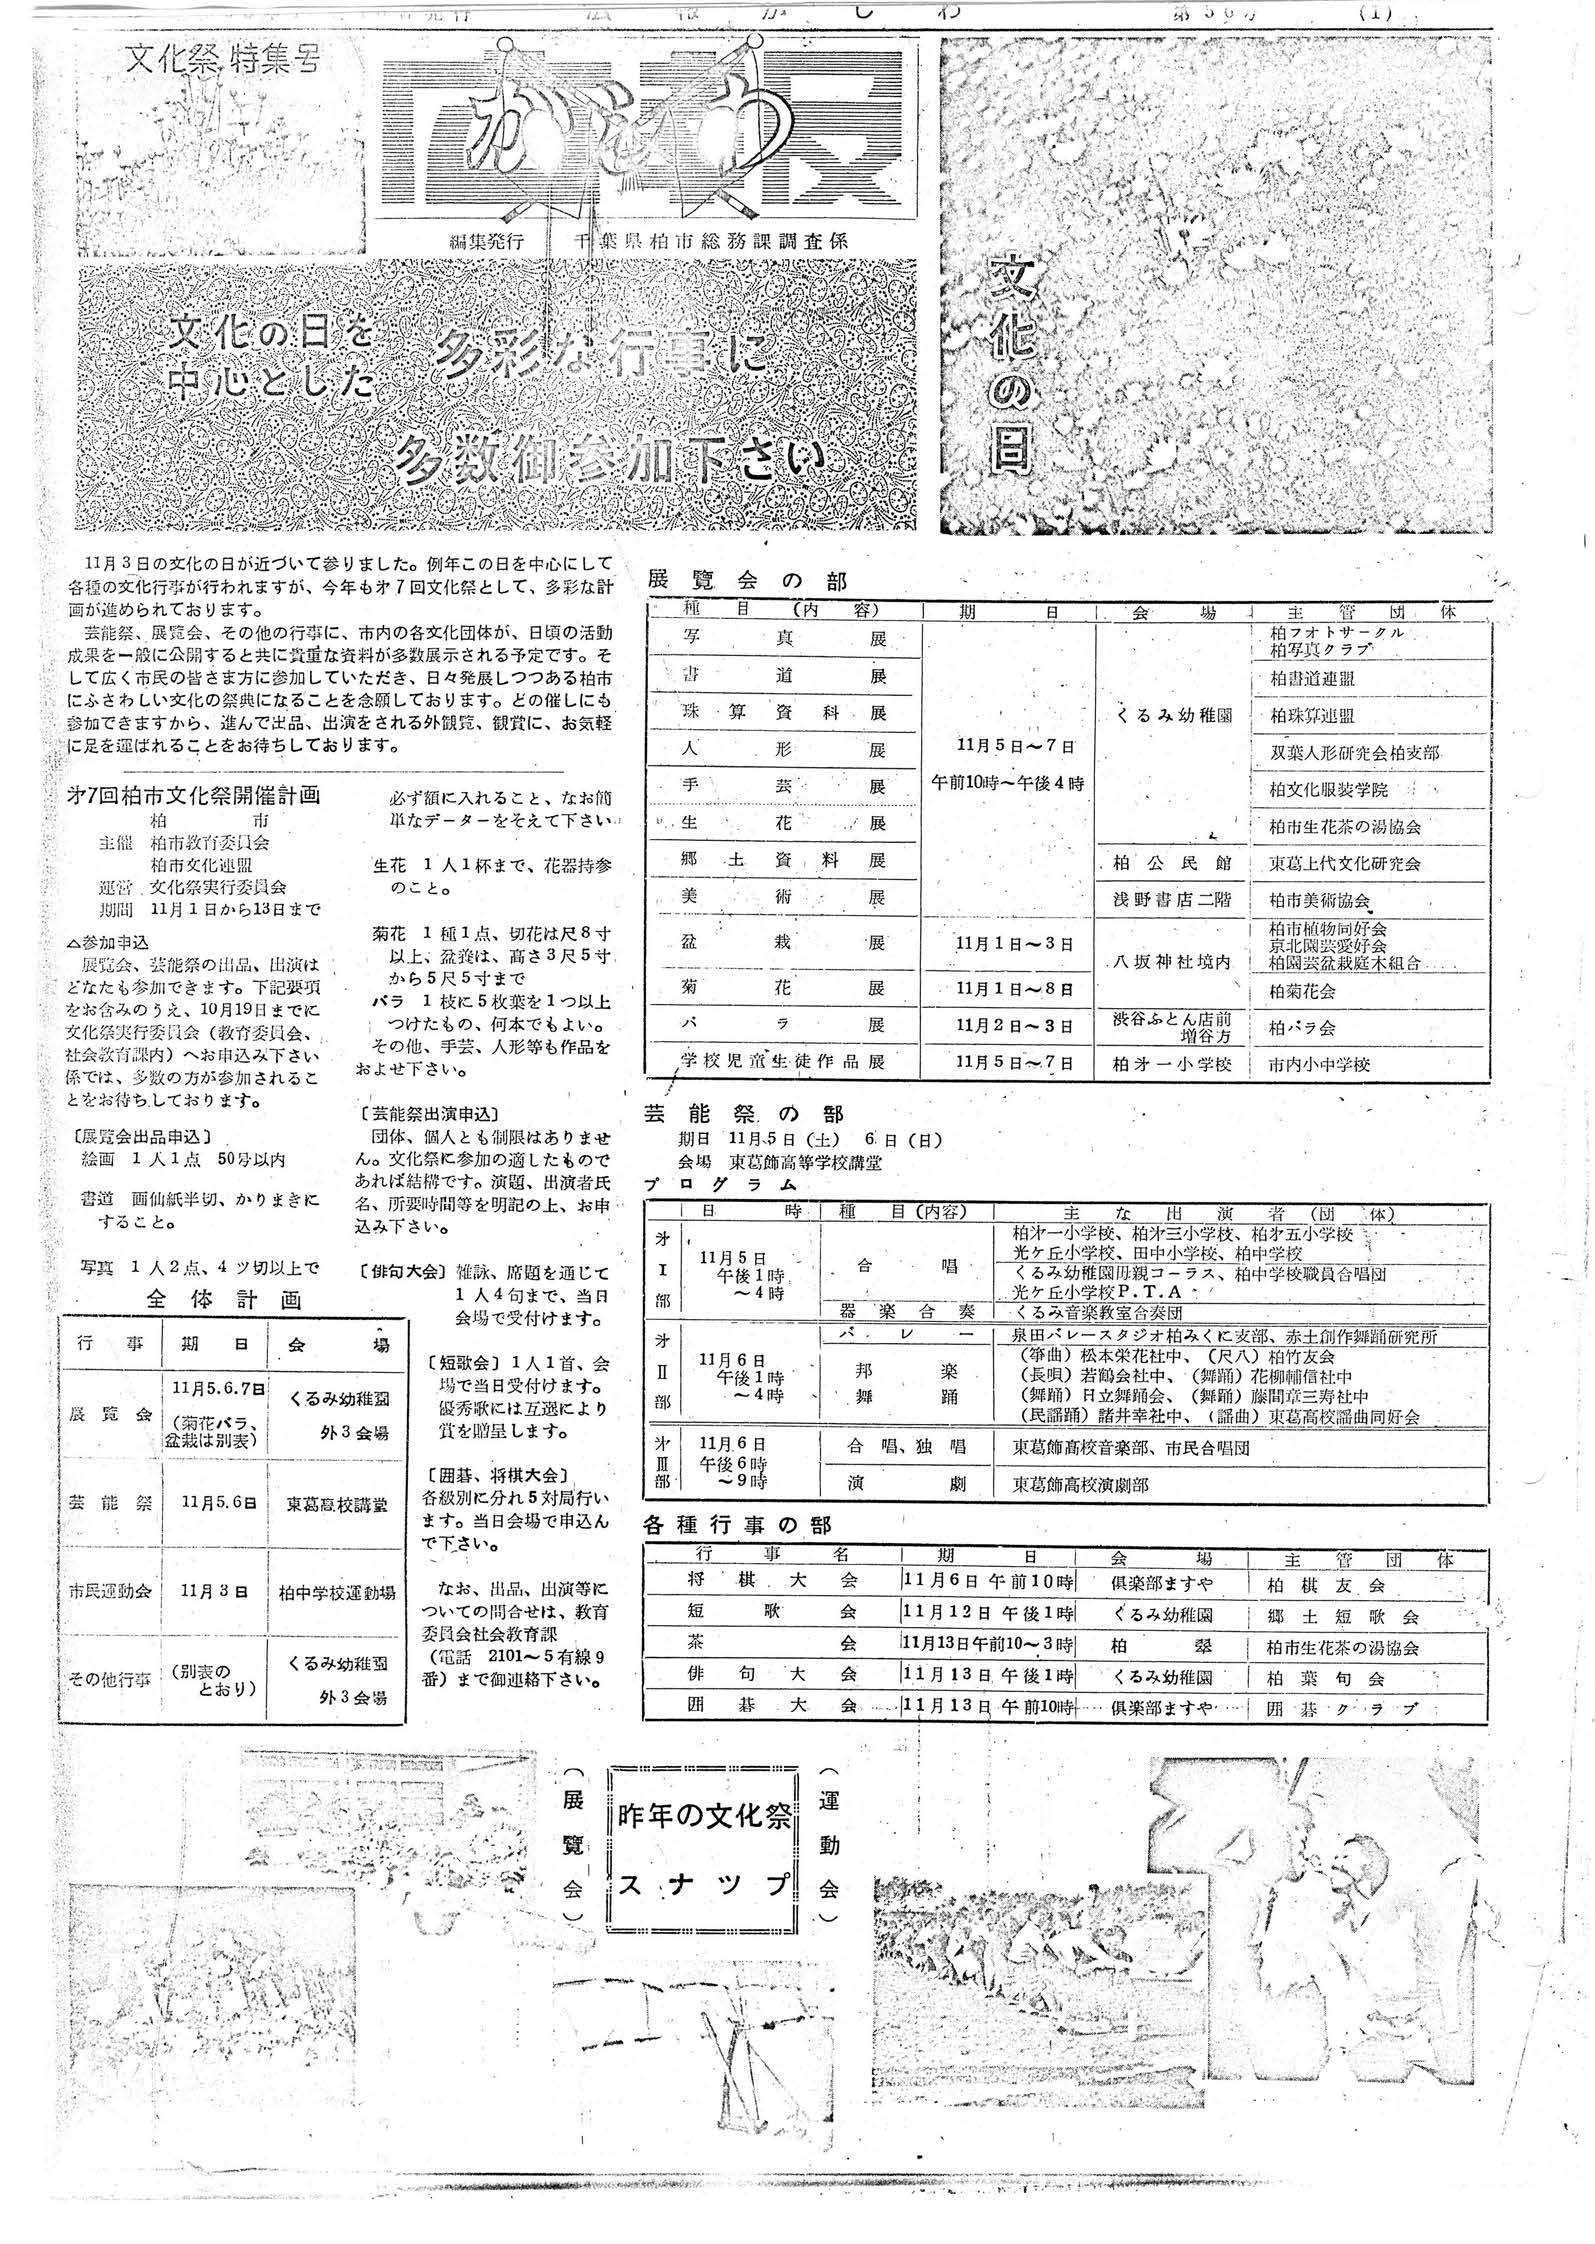 広報かしわ　昭和35年10月10日発行　56号